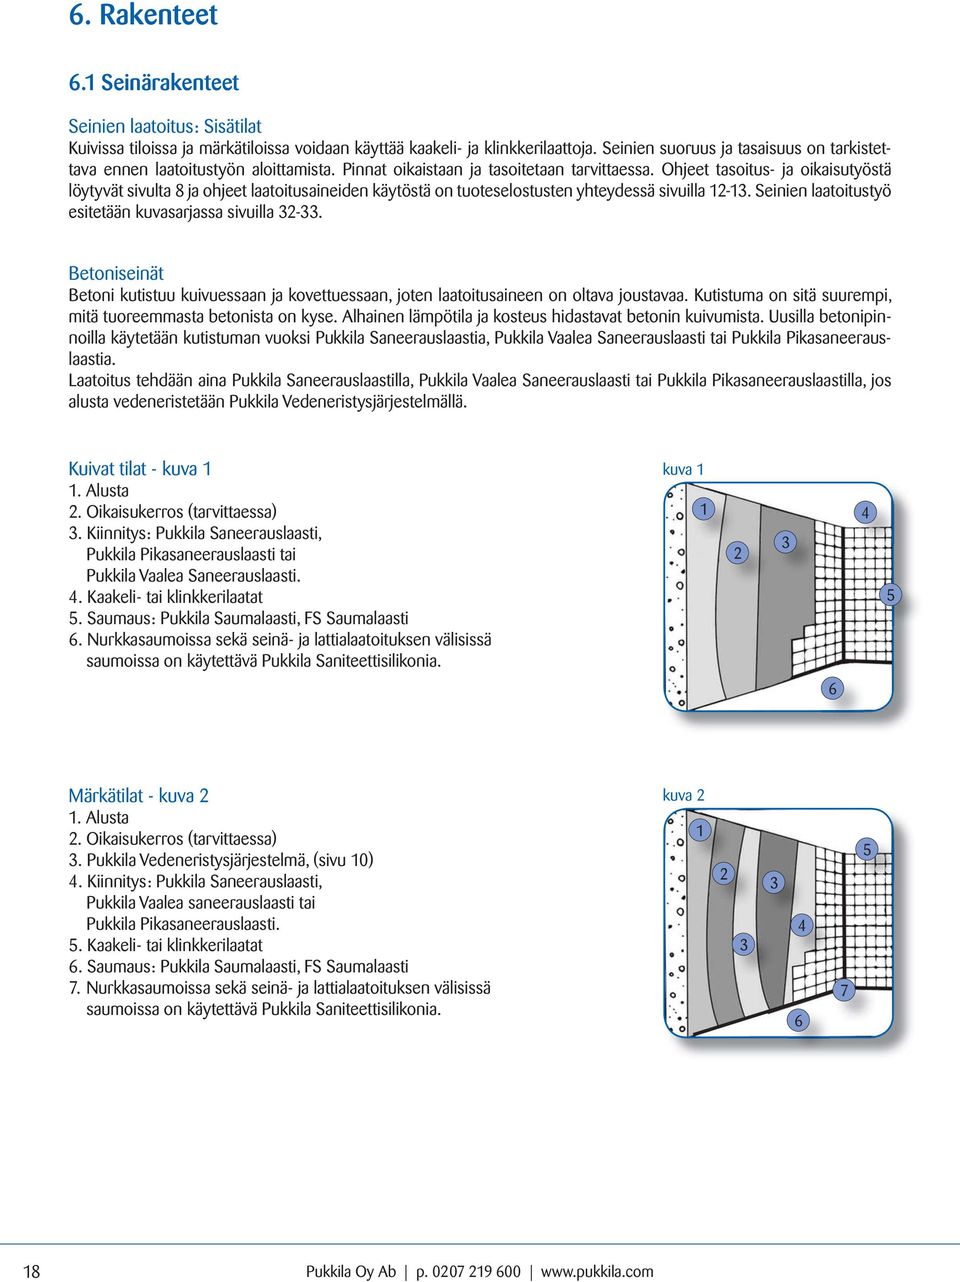 Ohjeet tasoitus- ja oikaisutyöstä löytyvät sivulta 8 ja ohjeet laatoitusaineiden käytöstä on tuoteselostusten yhteydessä sivuilla 12-13. Seinien laatoitus työ esitetään kuvasarjassa sivuilla 32-33.